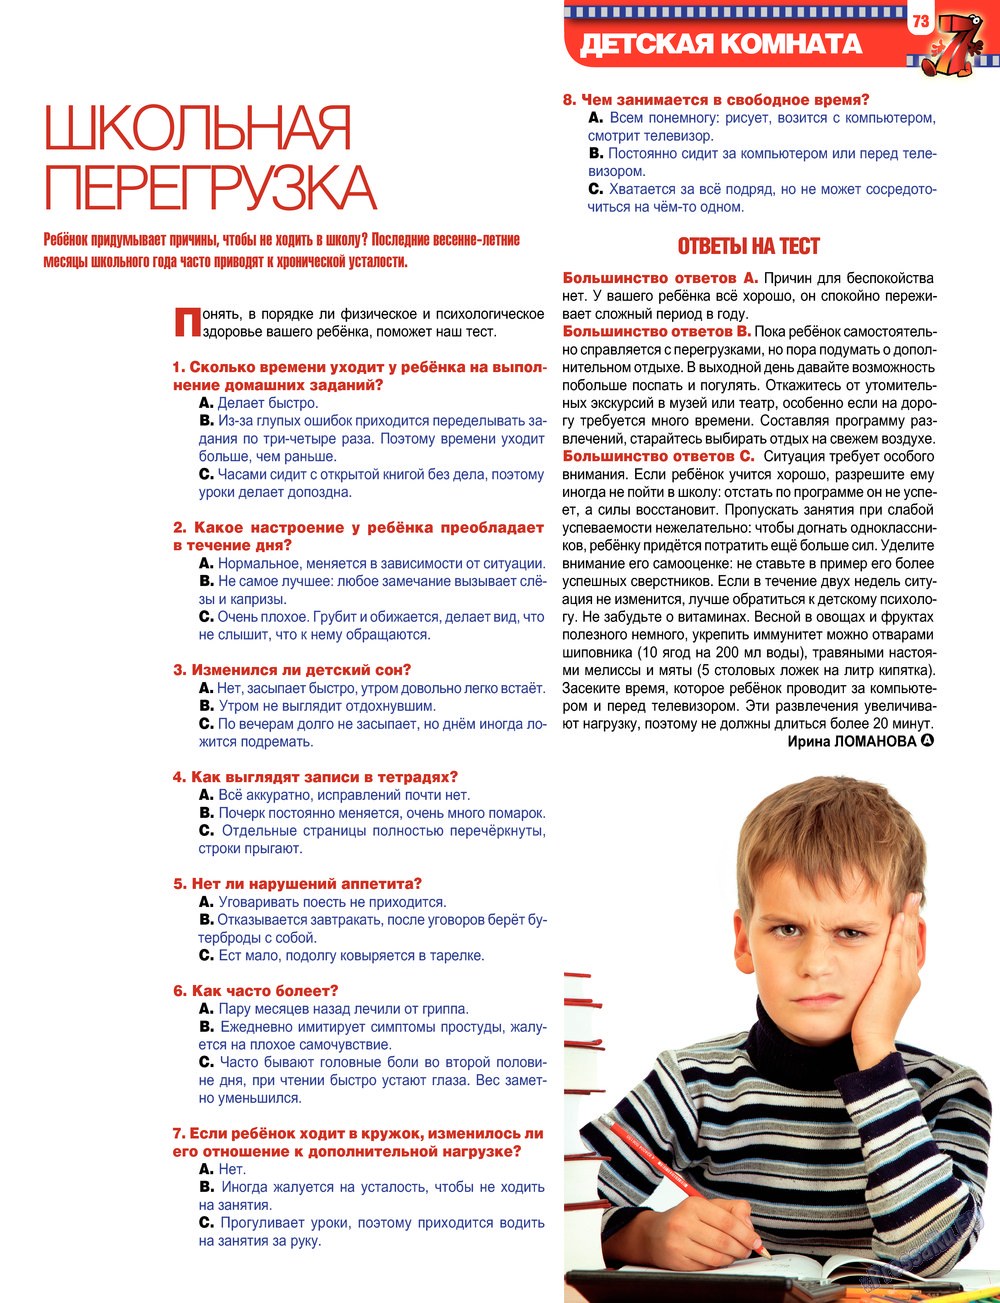 7плюс7я, журнал. 2013 №17 стр.73